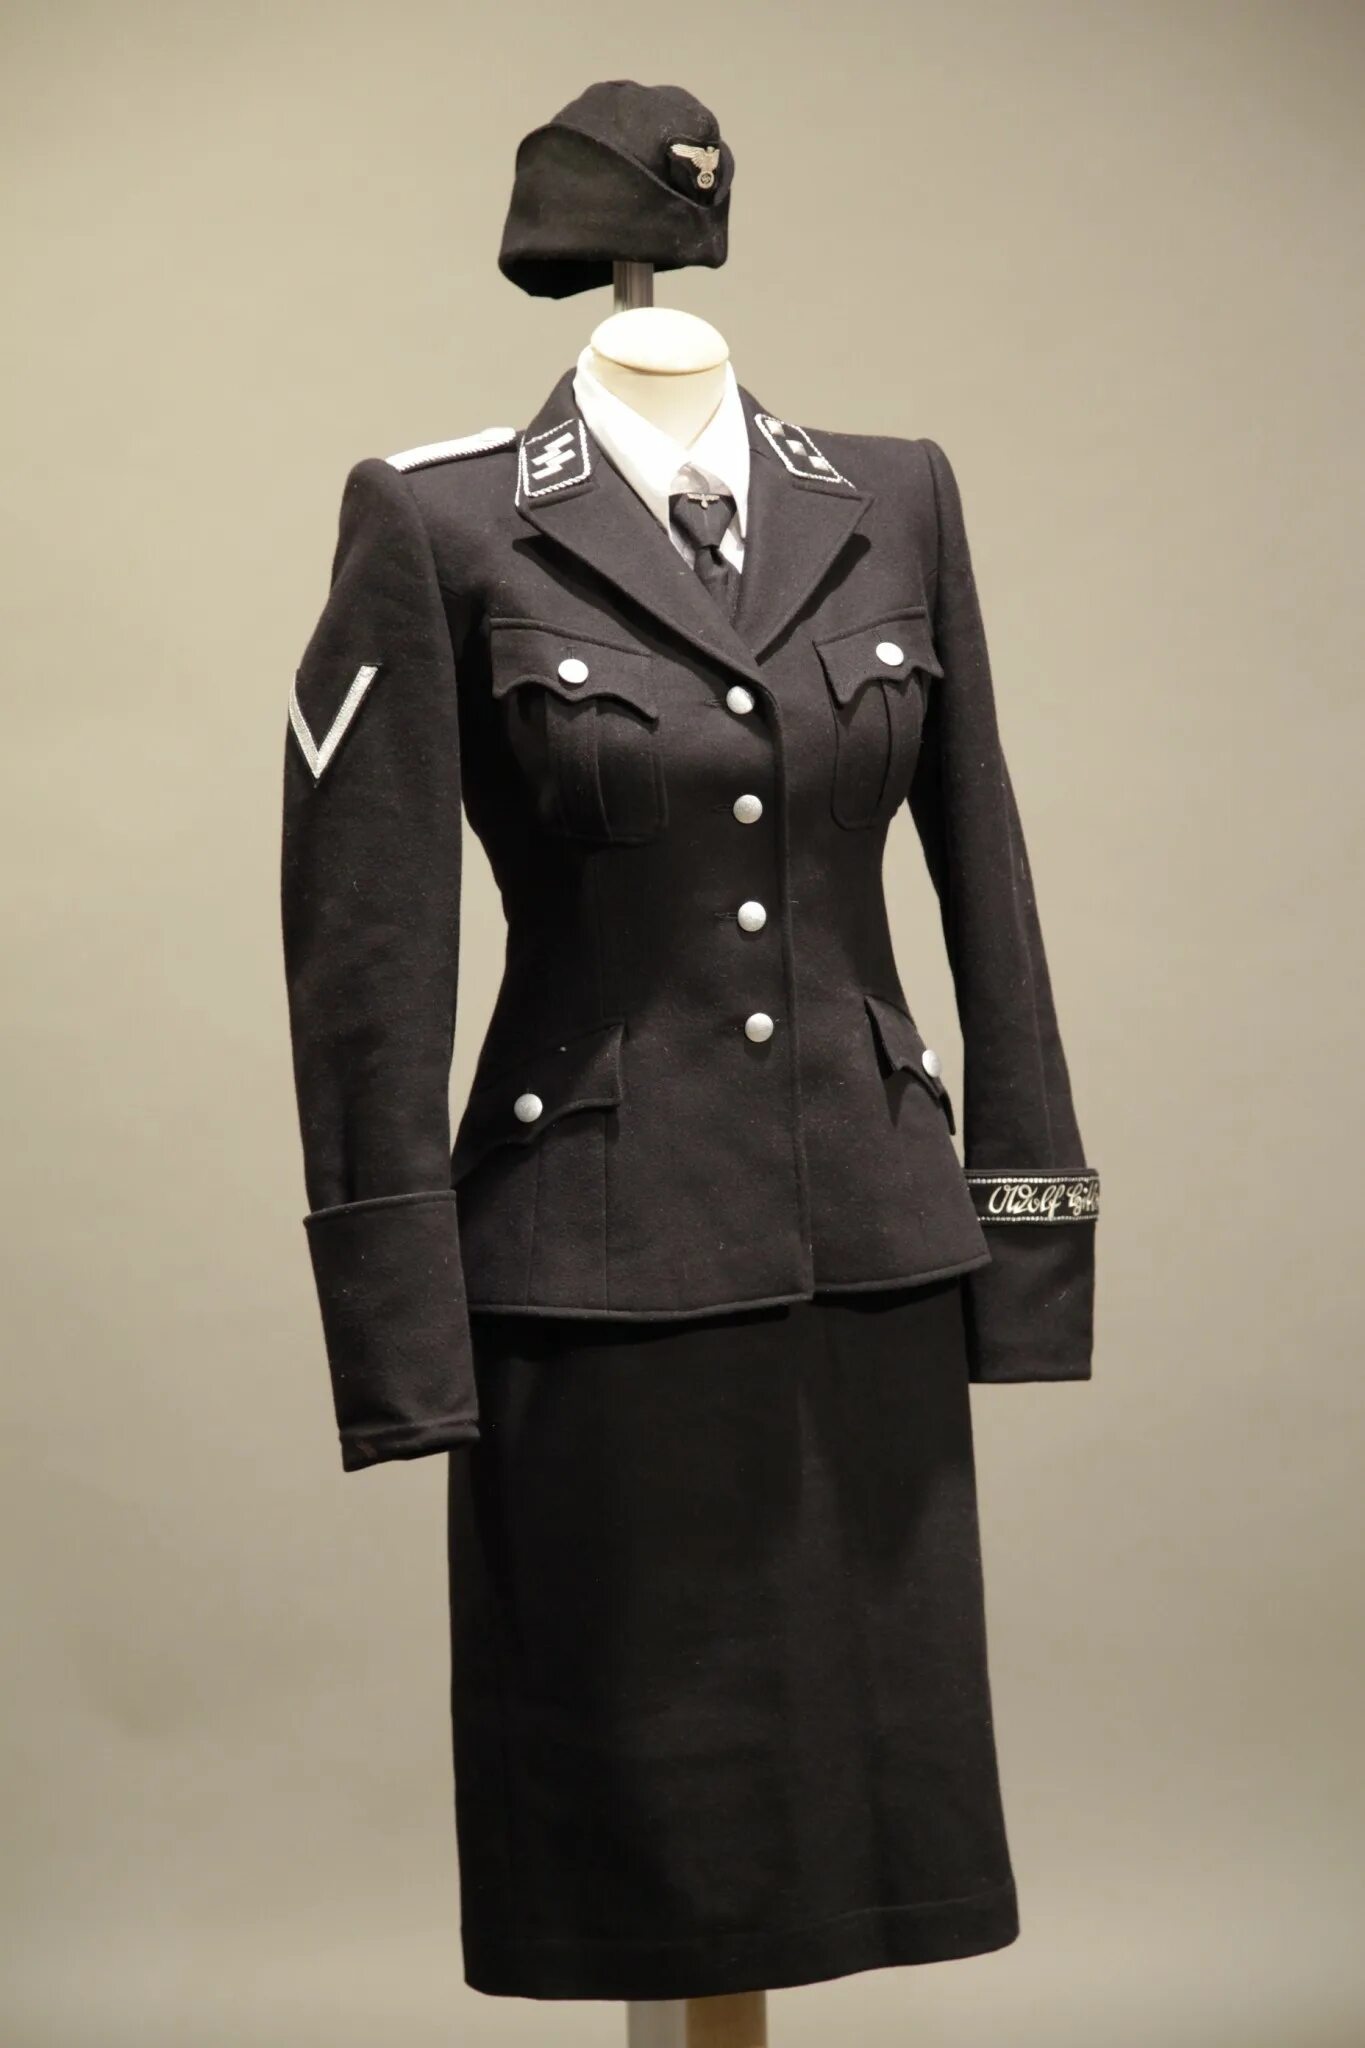 SS — Helferinnen форма. Хьюго босс униформа СС. Немецкая Военная форма 1941-1945 женская. Немецкая Военная форма женская. Женская сс